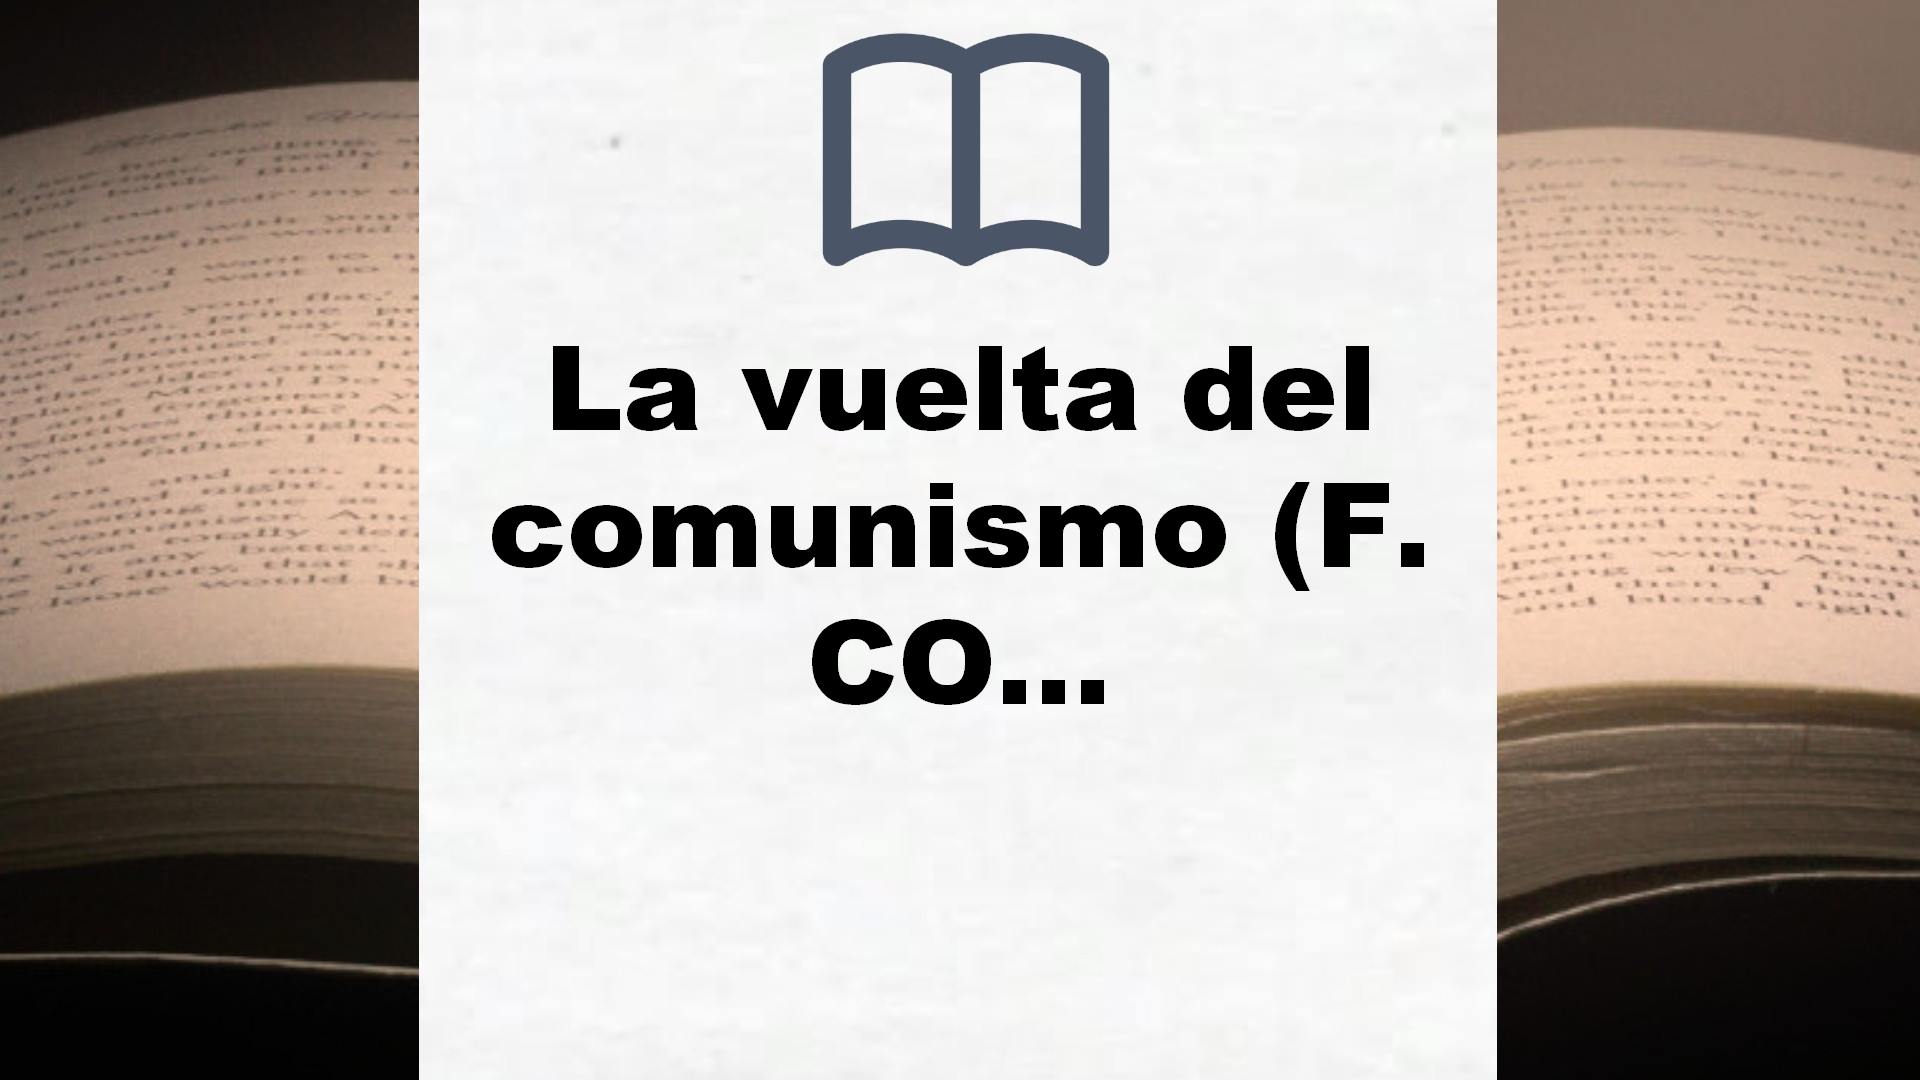 La vuelta del comunismo (F. COLECCION) – Reseña del libro